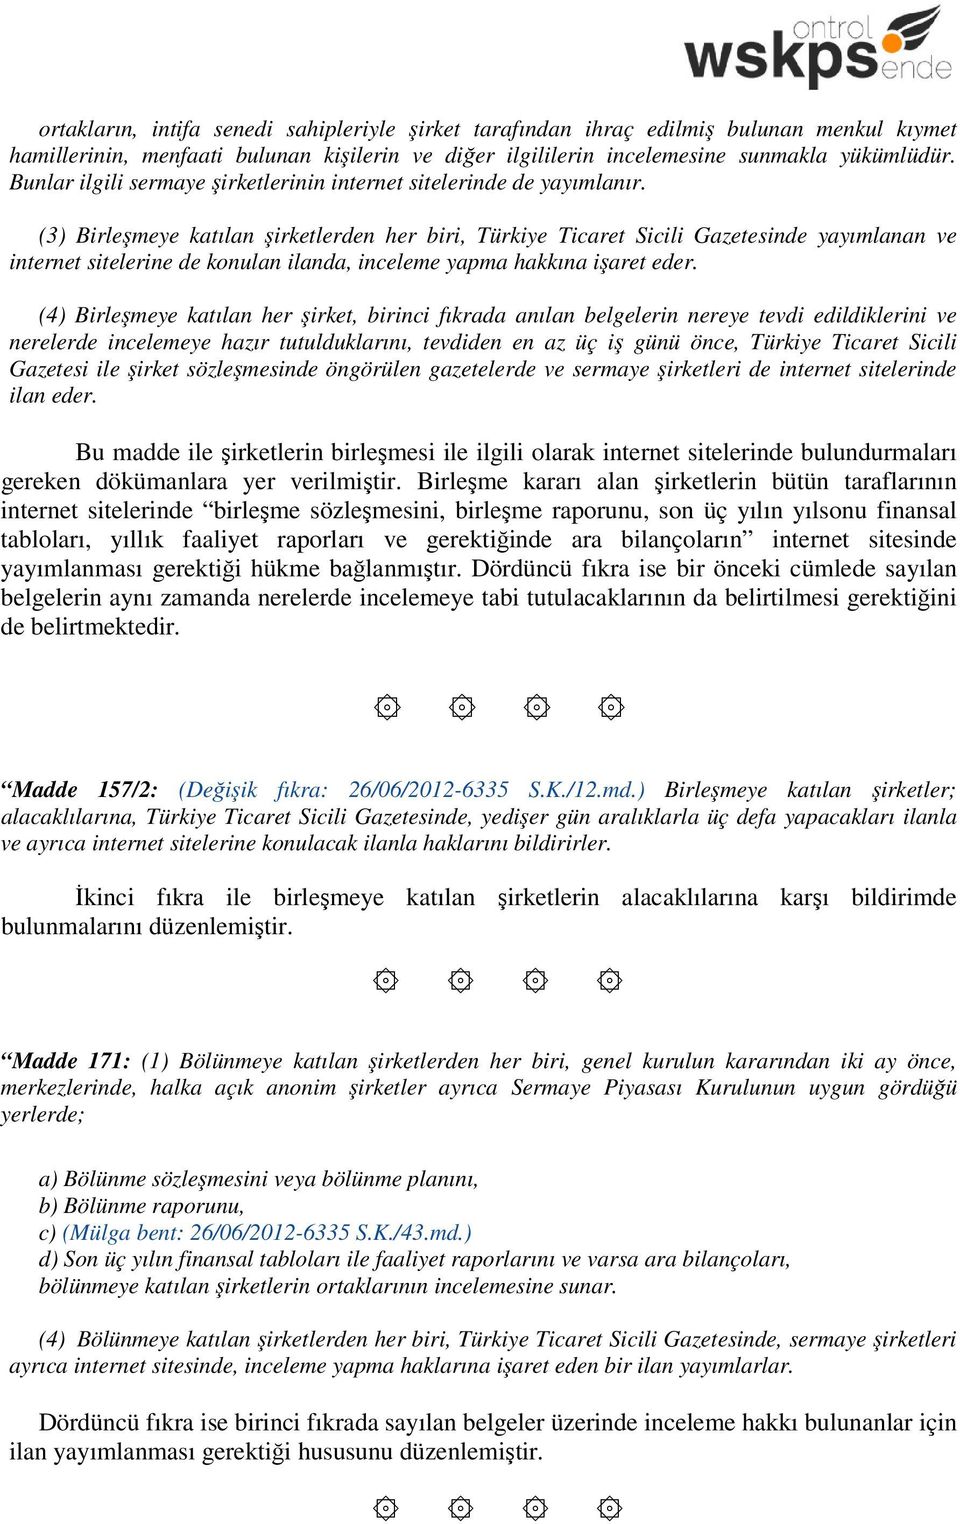 (3) Birleşmeye katılan şirketlerden her biri, Türkiye Ticaret Sicili Gazetesinde yayımlanan ve internet sitelerine de konulan ilanda, inceleme yapma hakkına işaret eder.